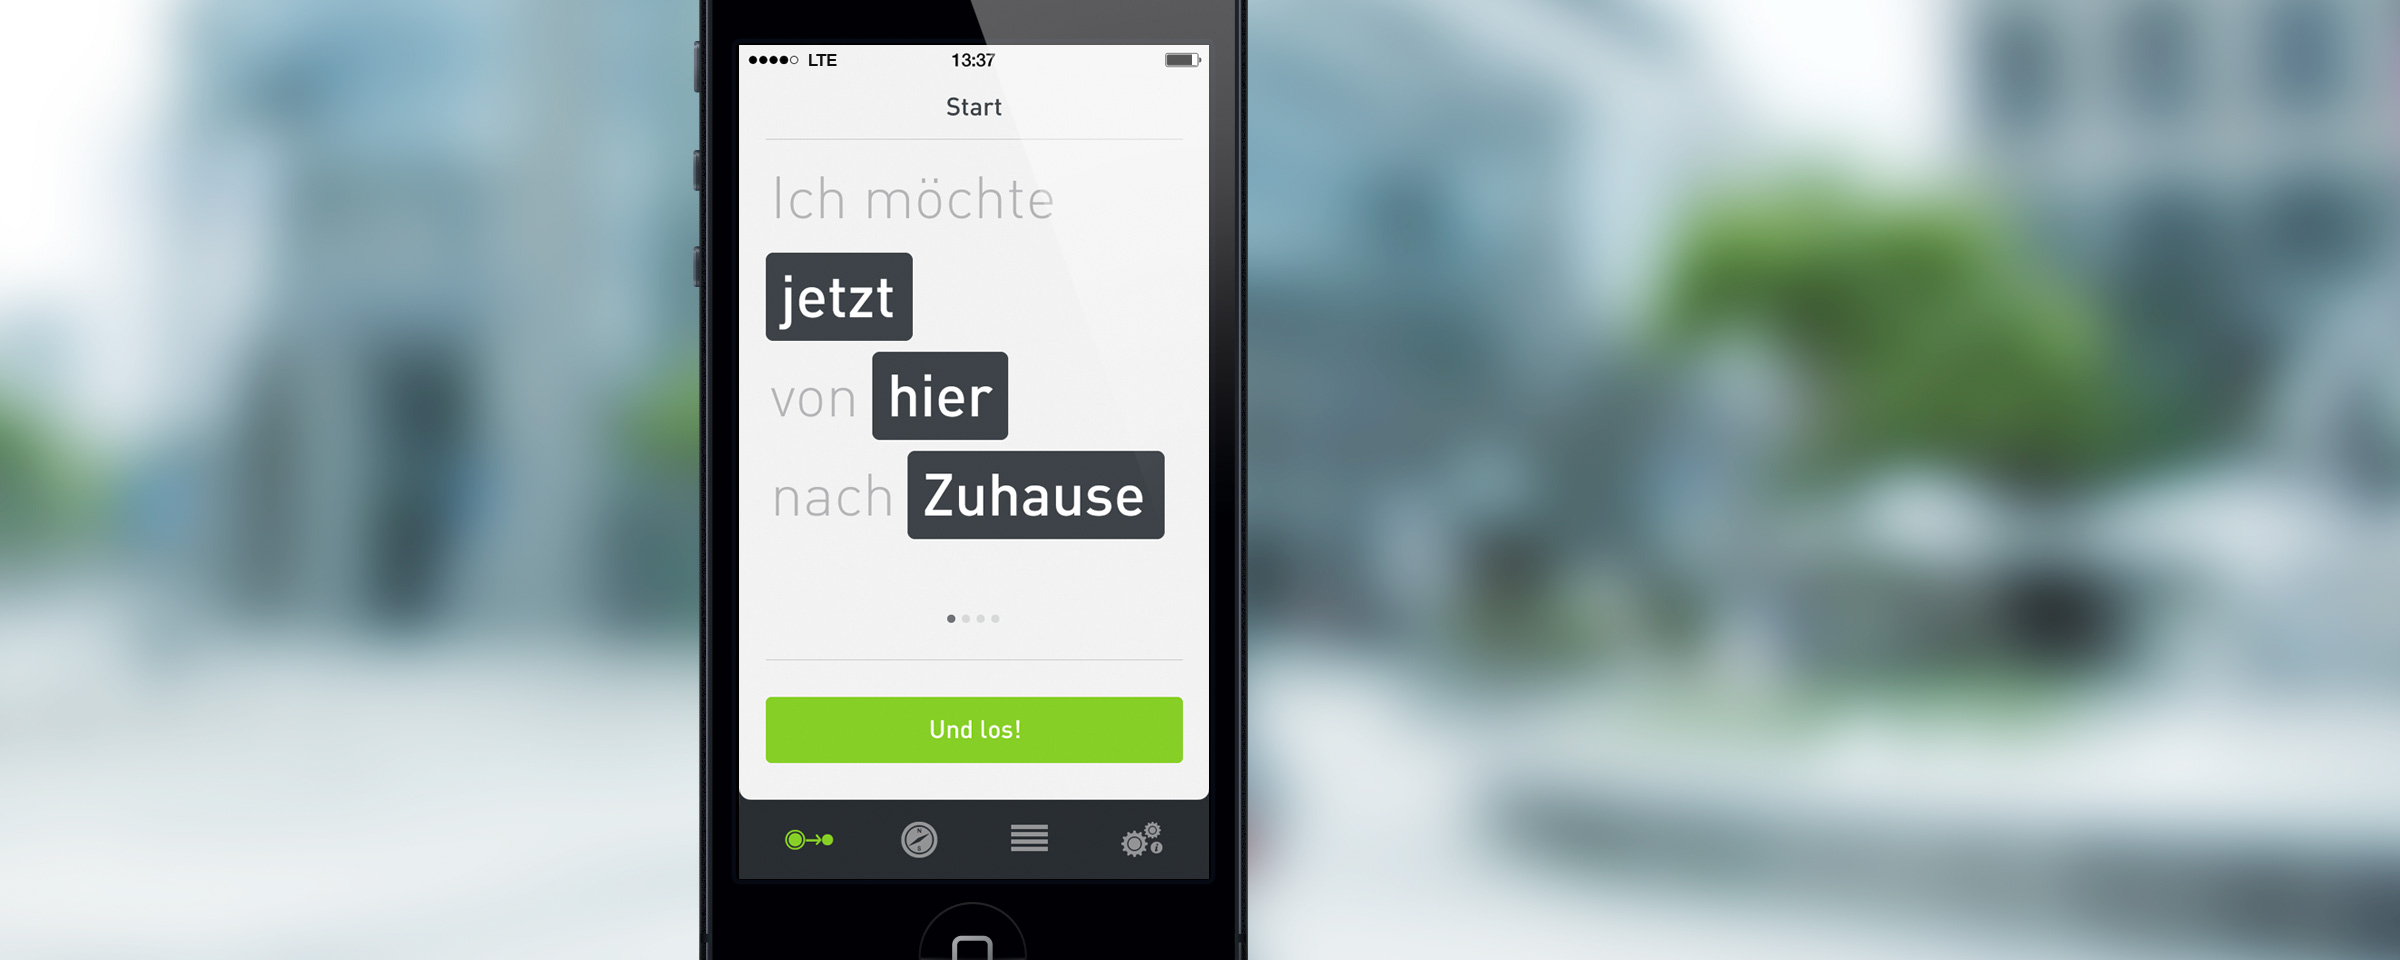 "Ich möchte jetzt von hier nach Zuhause" is shown in the Moovel App